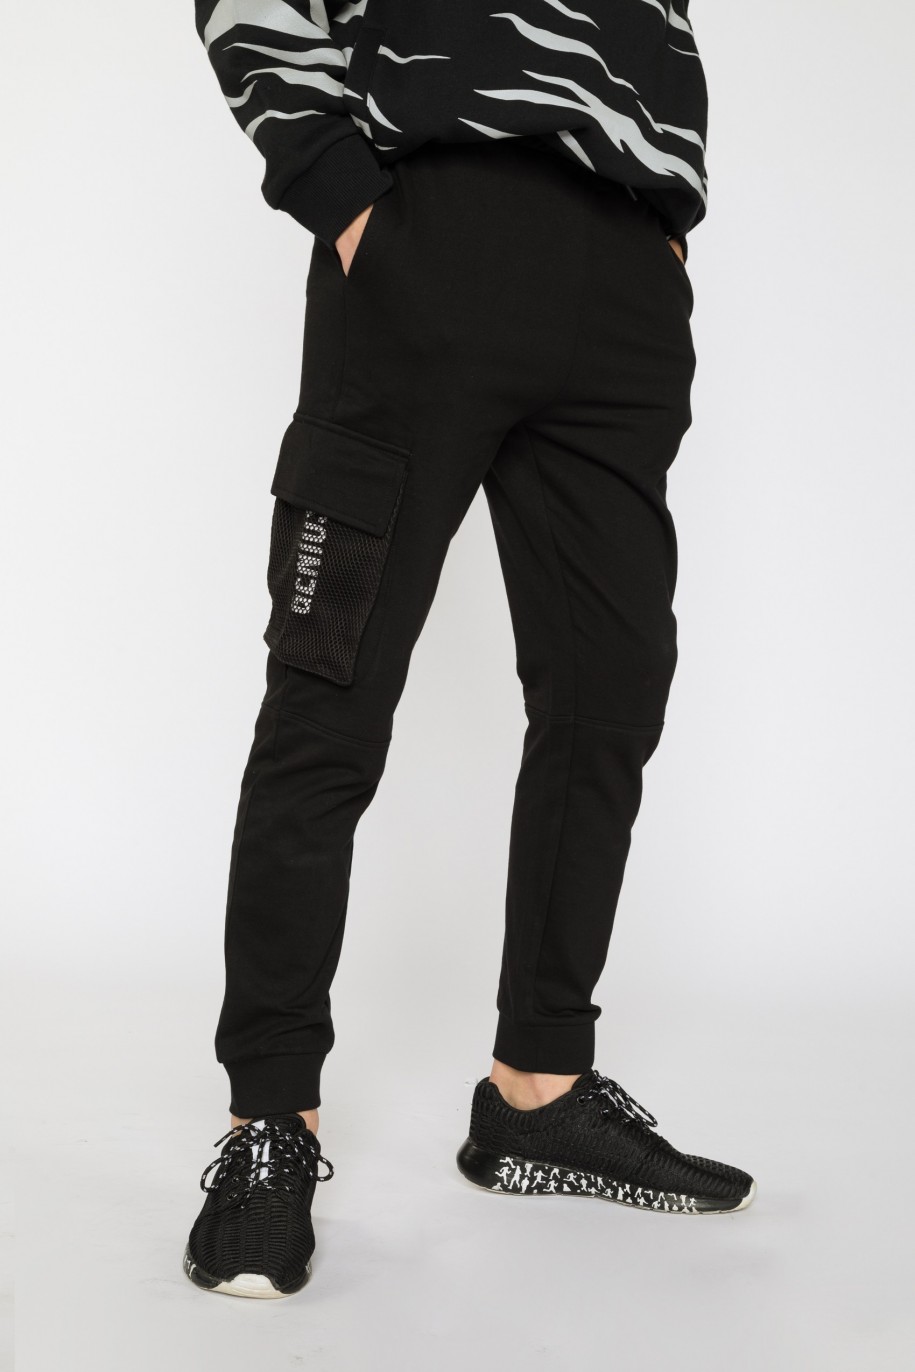 Czarne spodnie dresowe dla chłopaka CREATIVE SKILLS - 31602